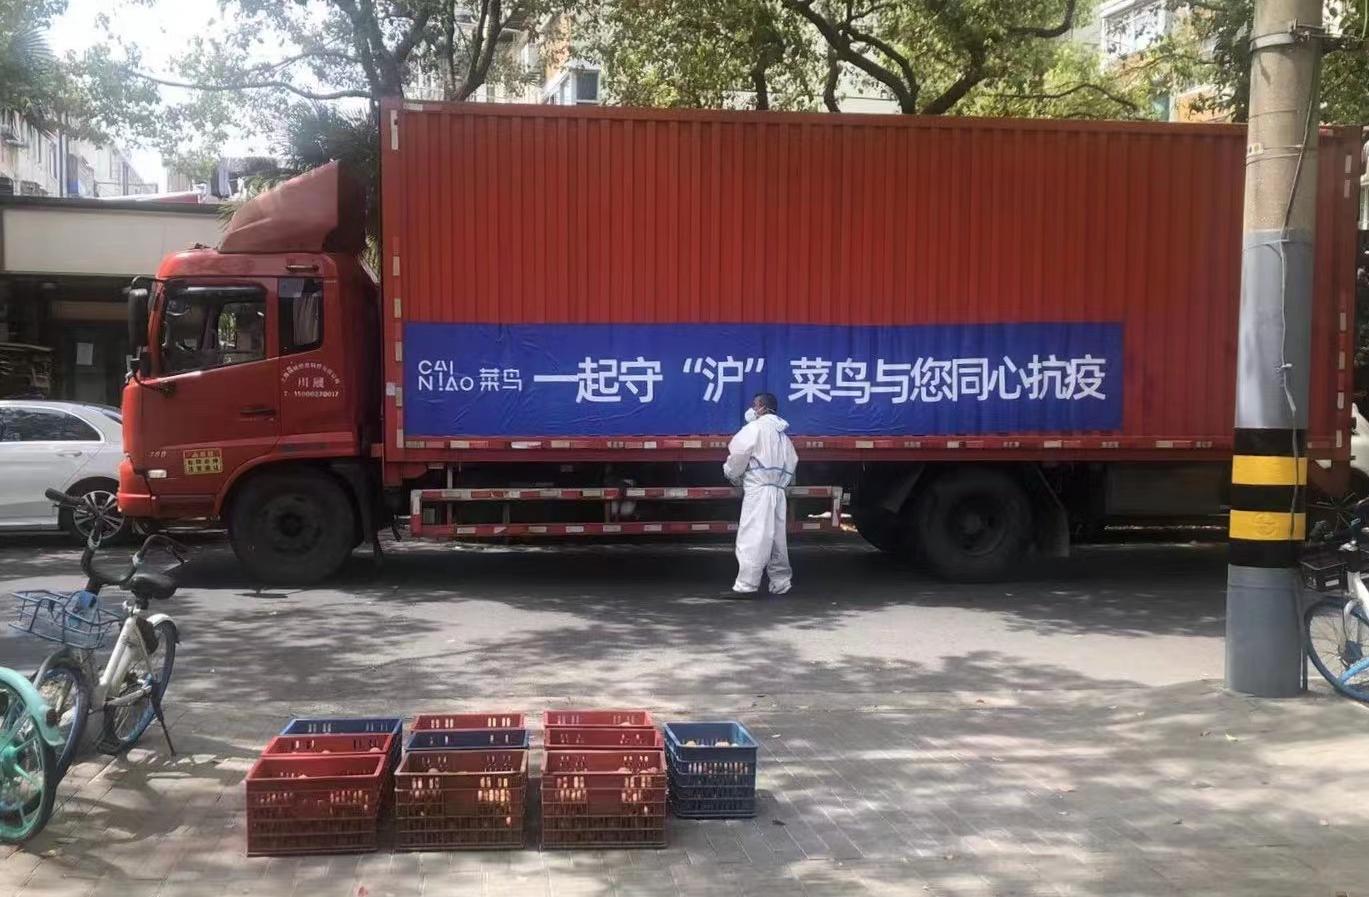 月12日电商报/菜鸟将在上海开设“助老专仓”，协助民政部门处理老年人物资"